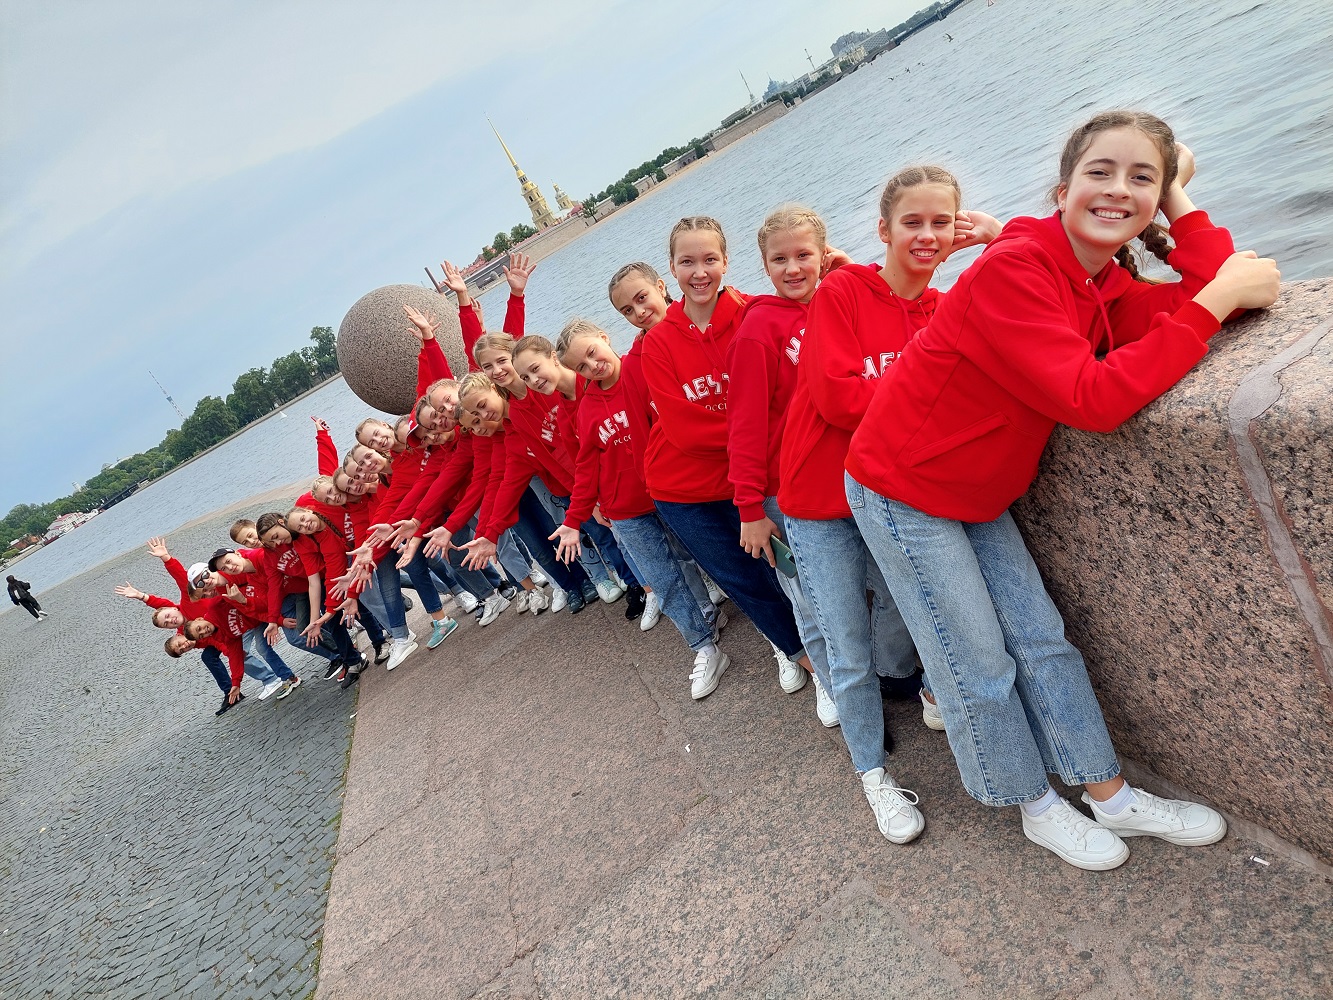 2021 - Россия, Санкт-Петербург - XIII Международный творческий проект и конкурс «Балтийский мир» Гран – При тур. 